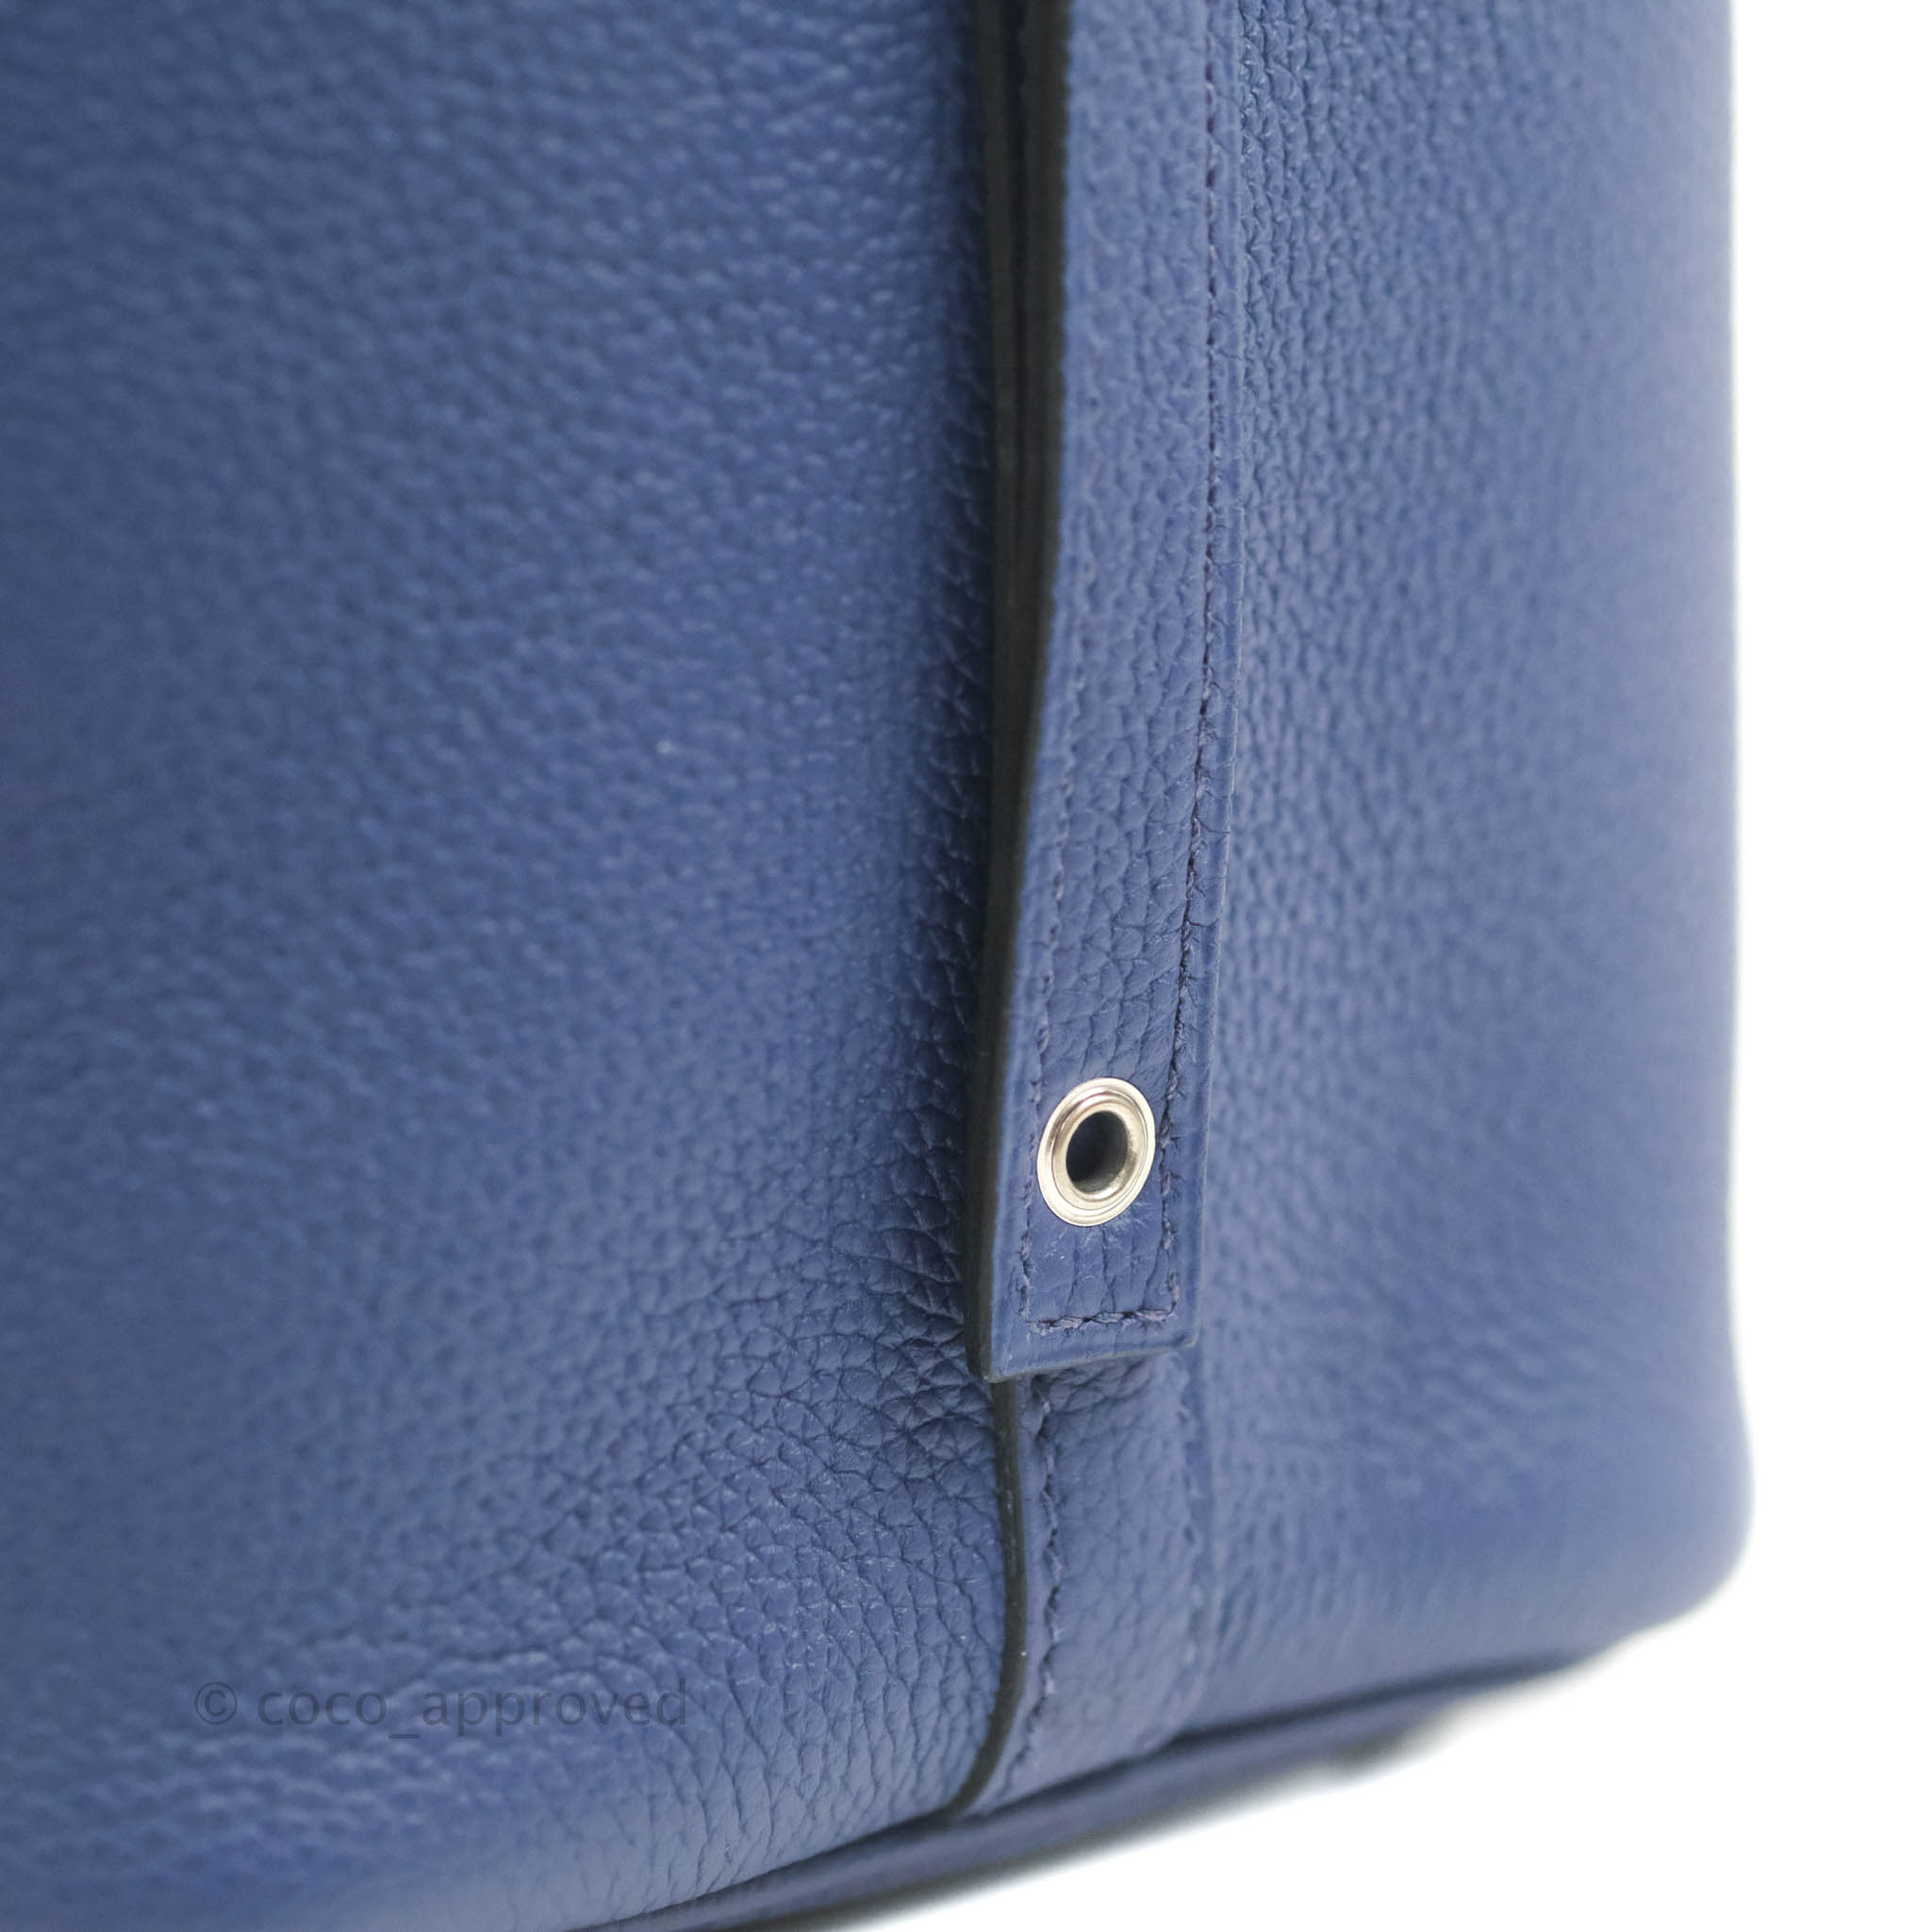 Hermès Picotin Lock 18 In Bleu Saphir And Bleu Brighton Clemence With  Palladium Hardware in Blue